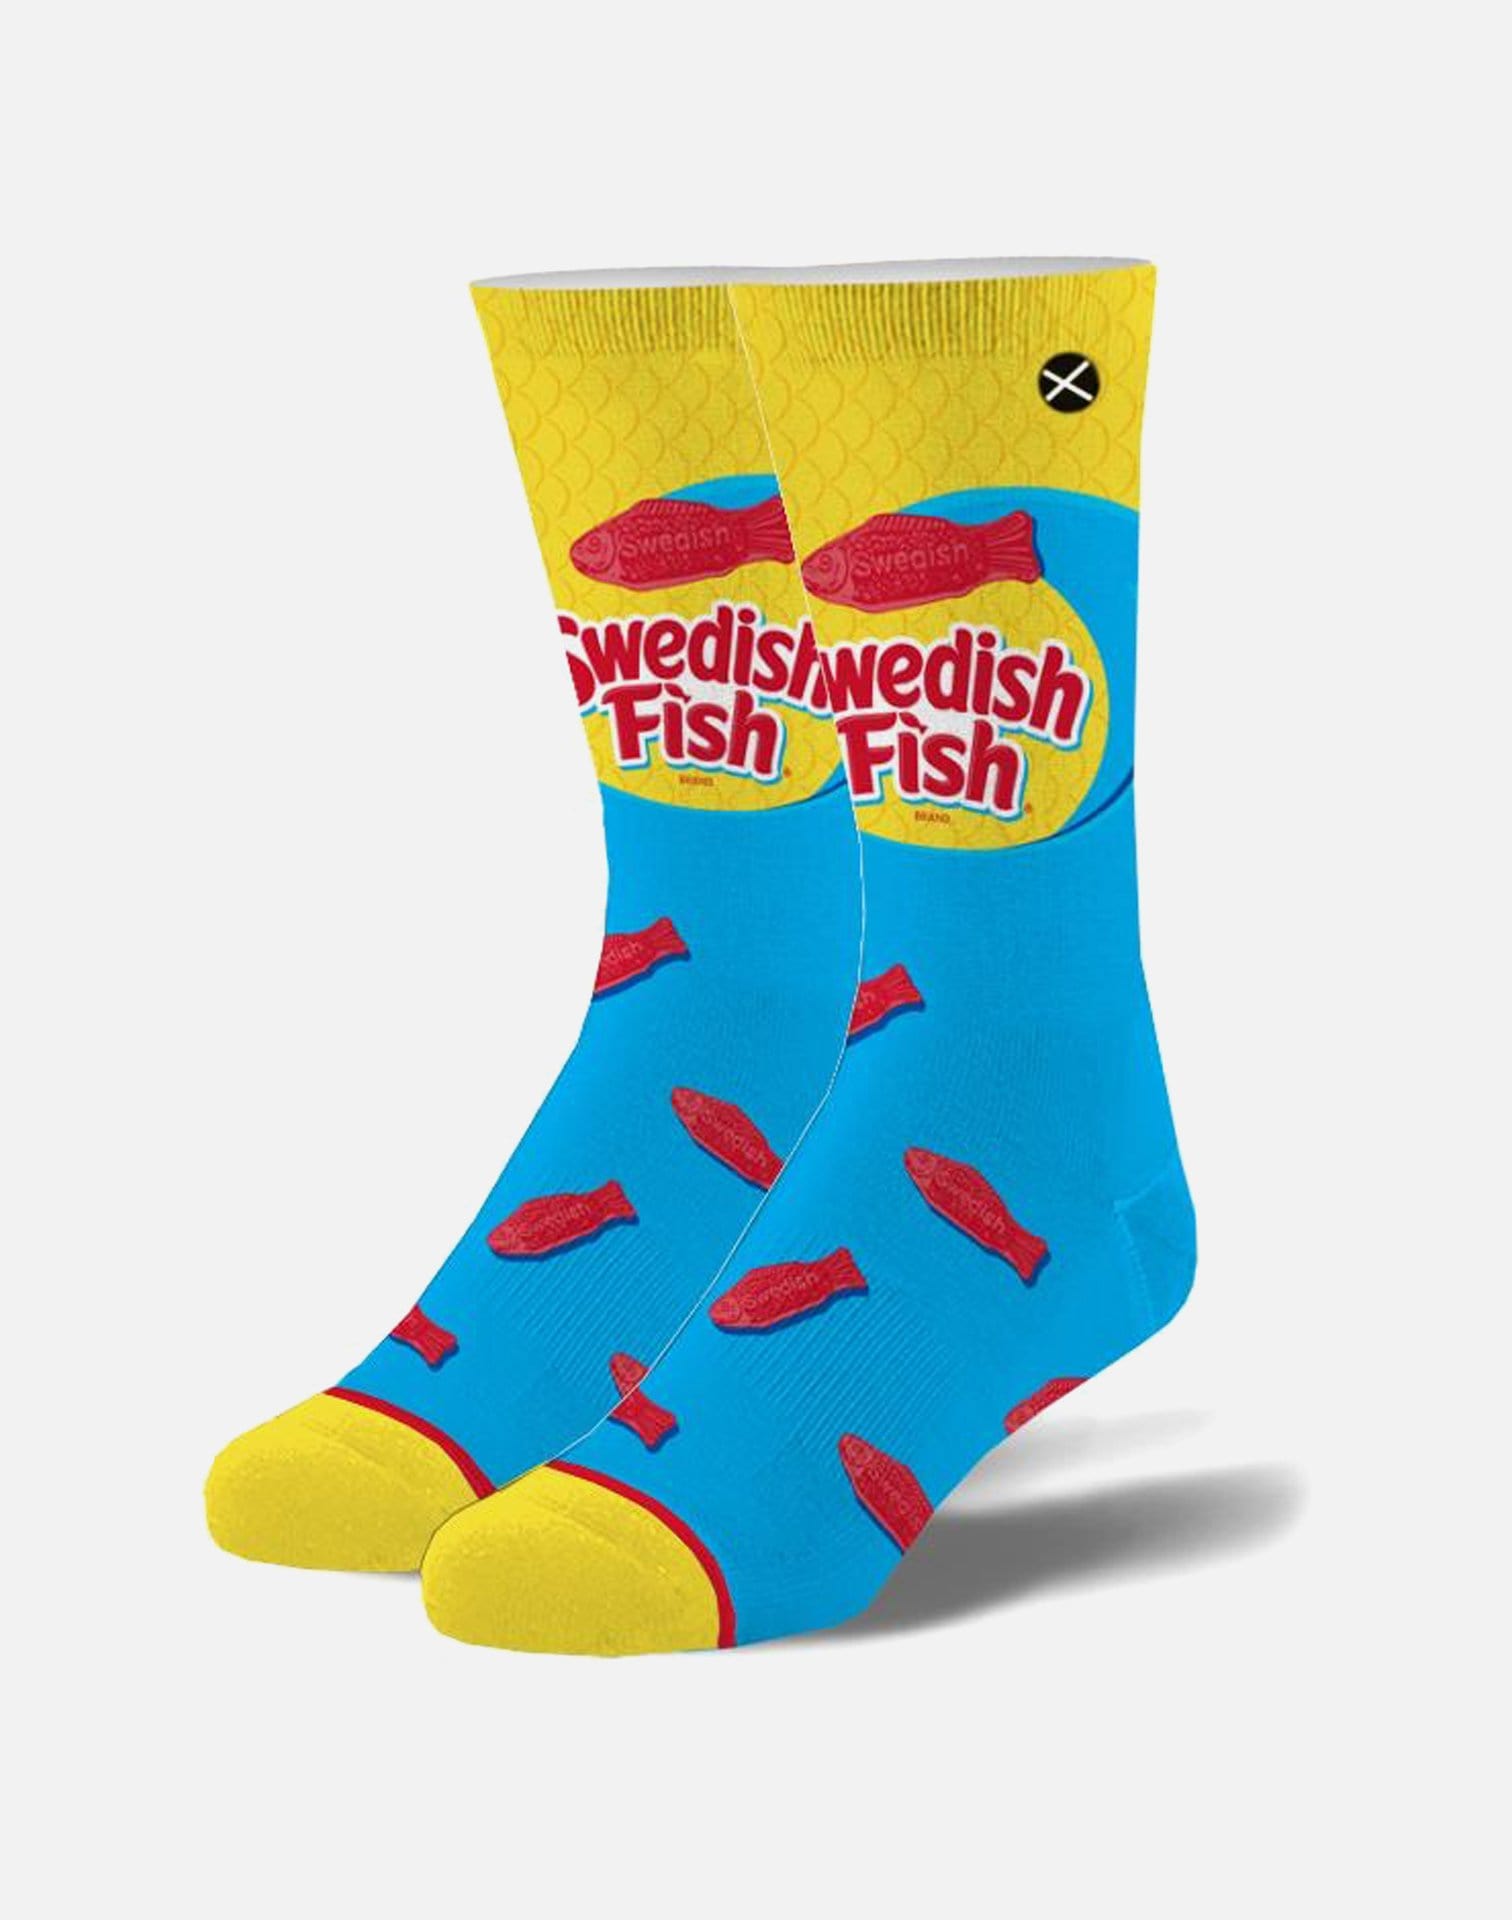 Odd Sox Swedish Fish Crew Socks